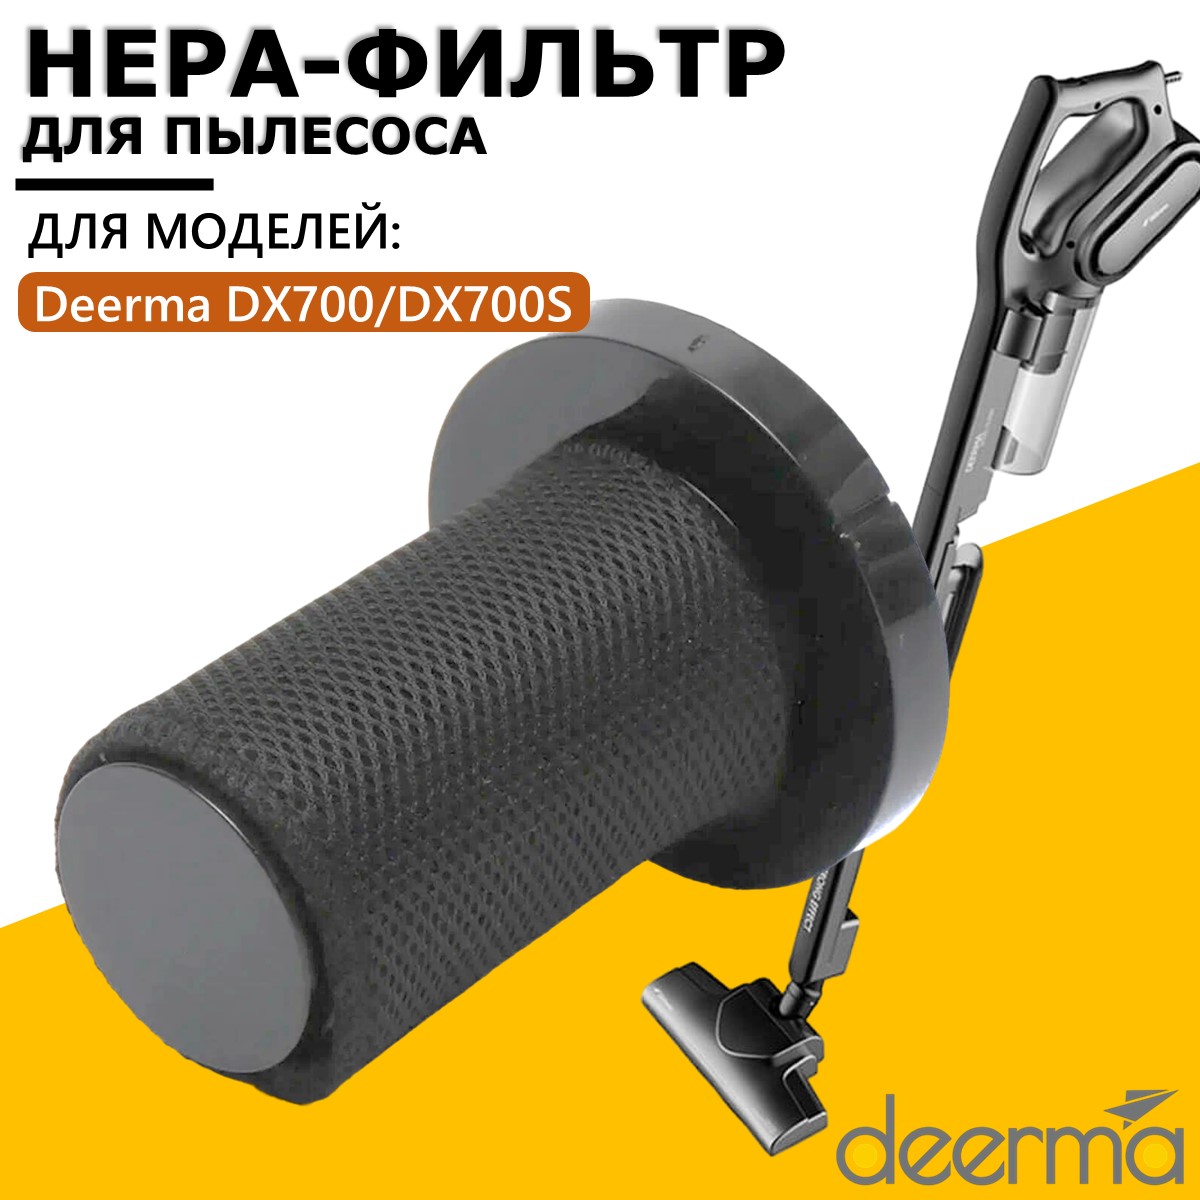 Фильтр Deerma DX700S hepa фильтр для вертикального пылесоса deerma dx700 dx700s